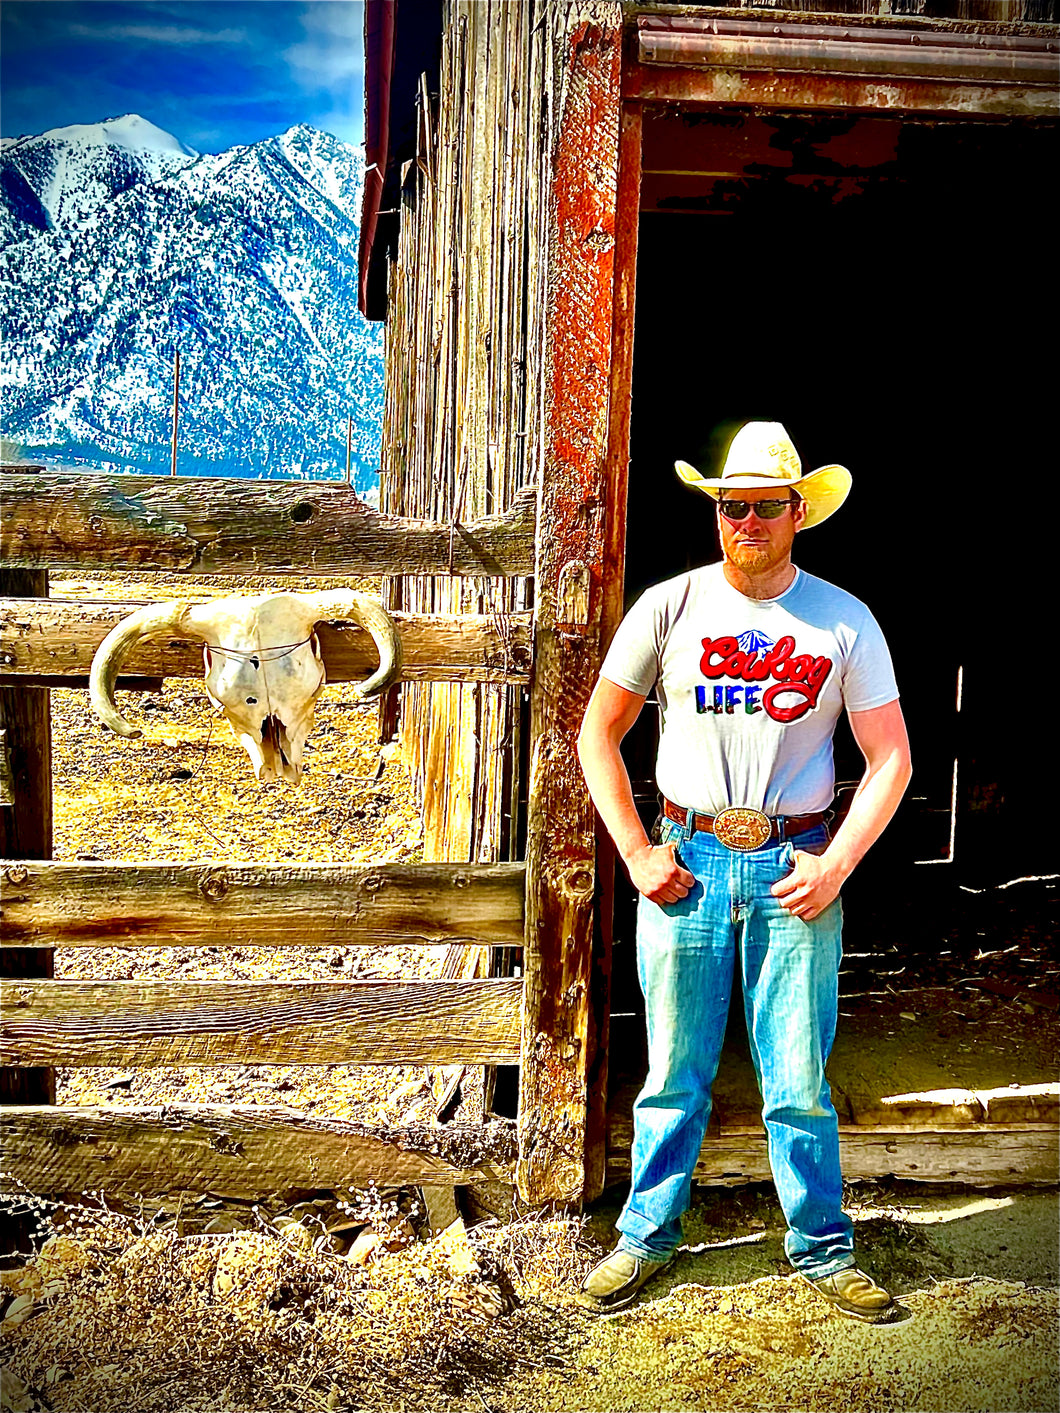 Cowboy Life T